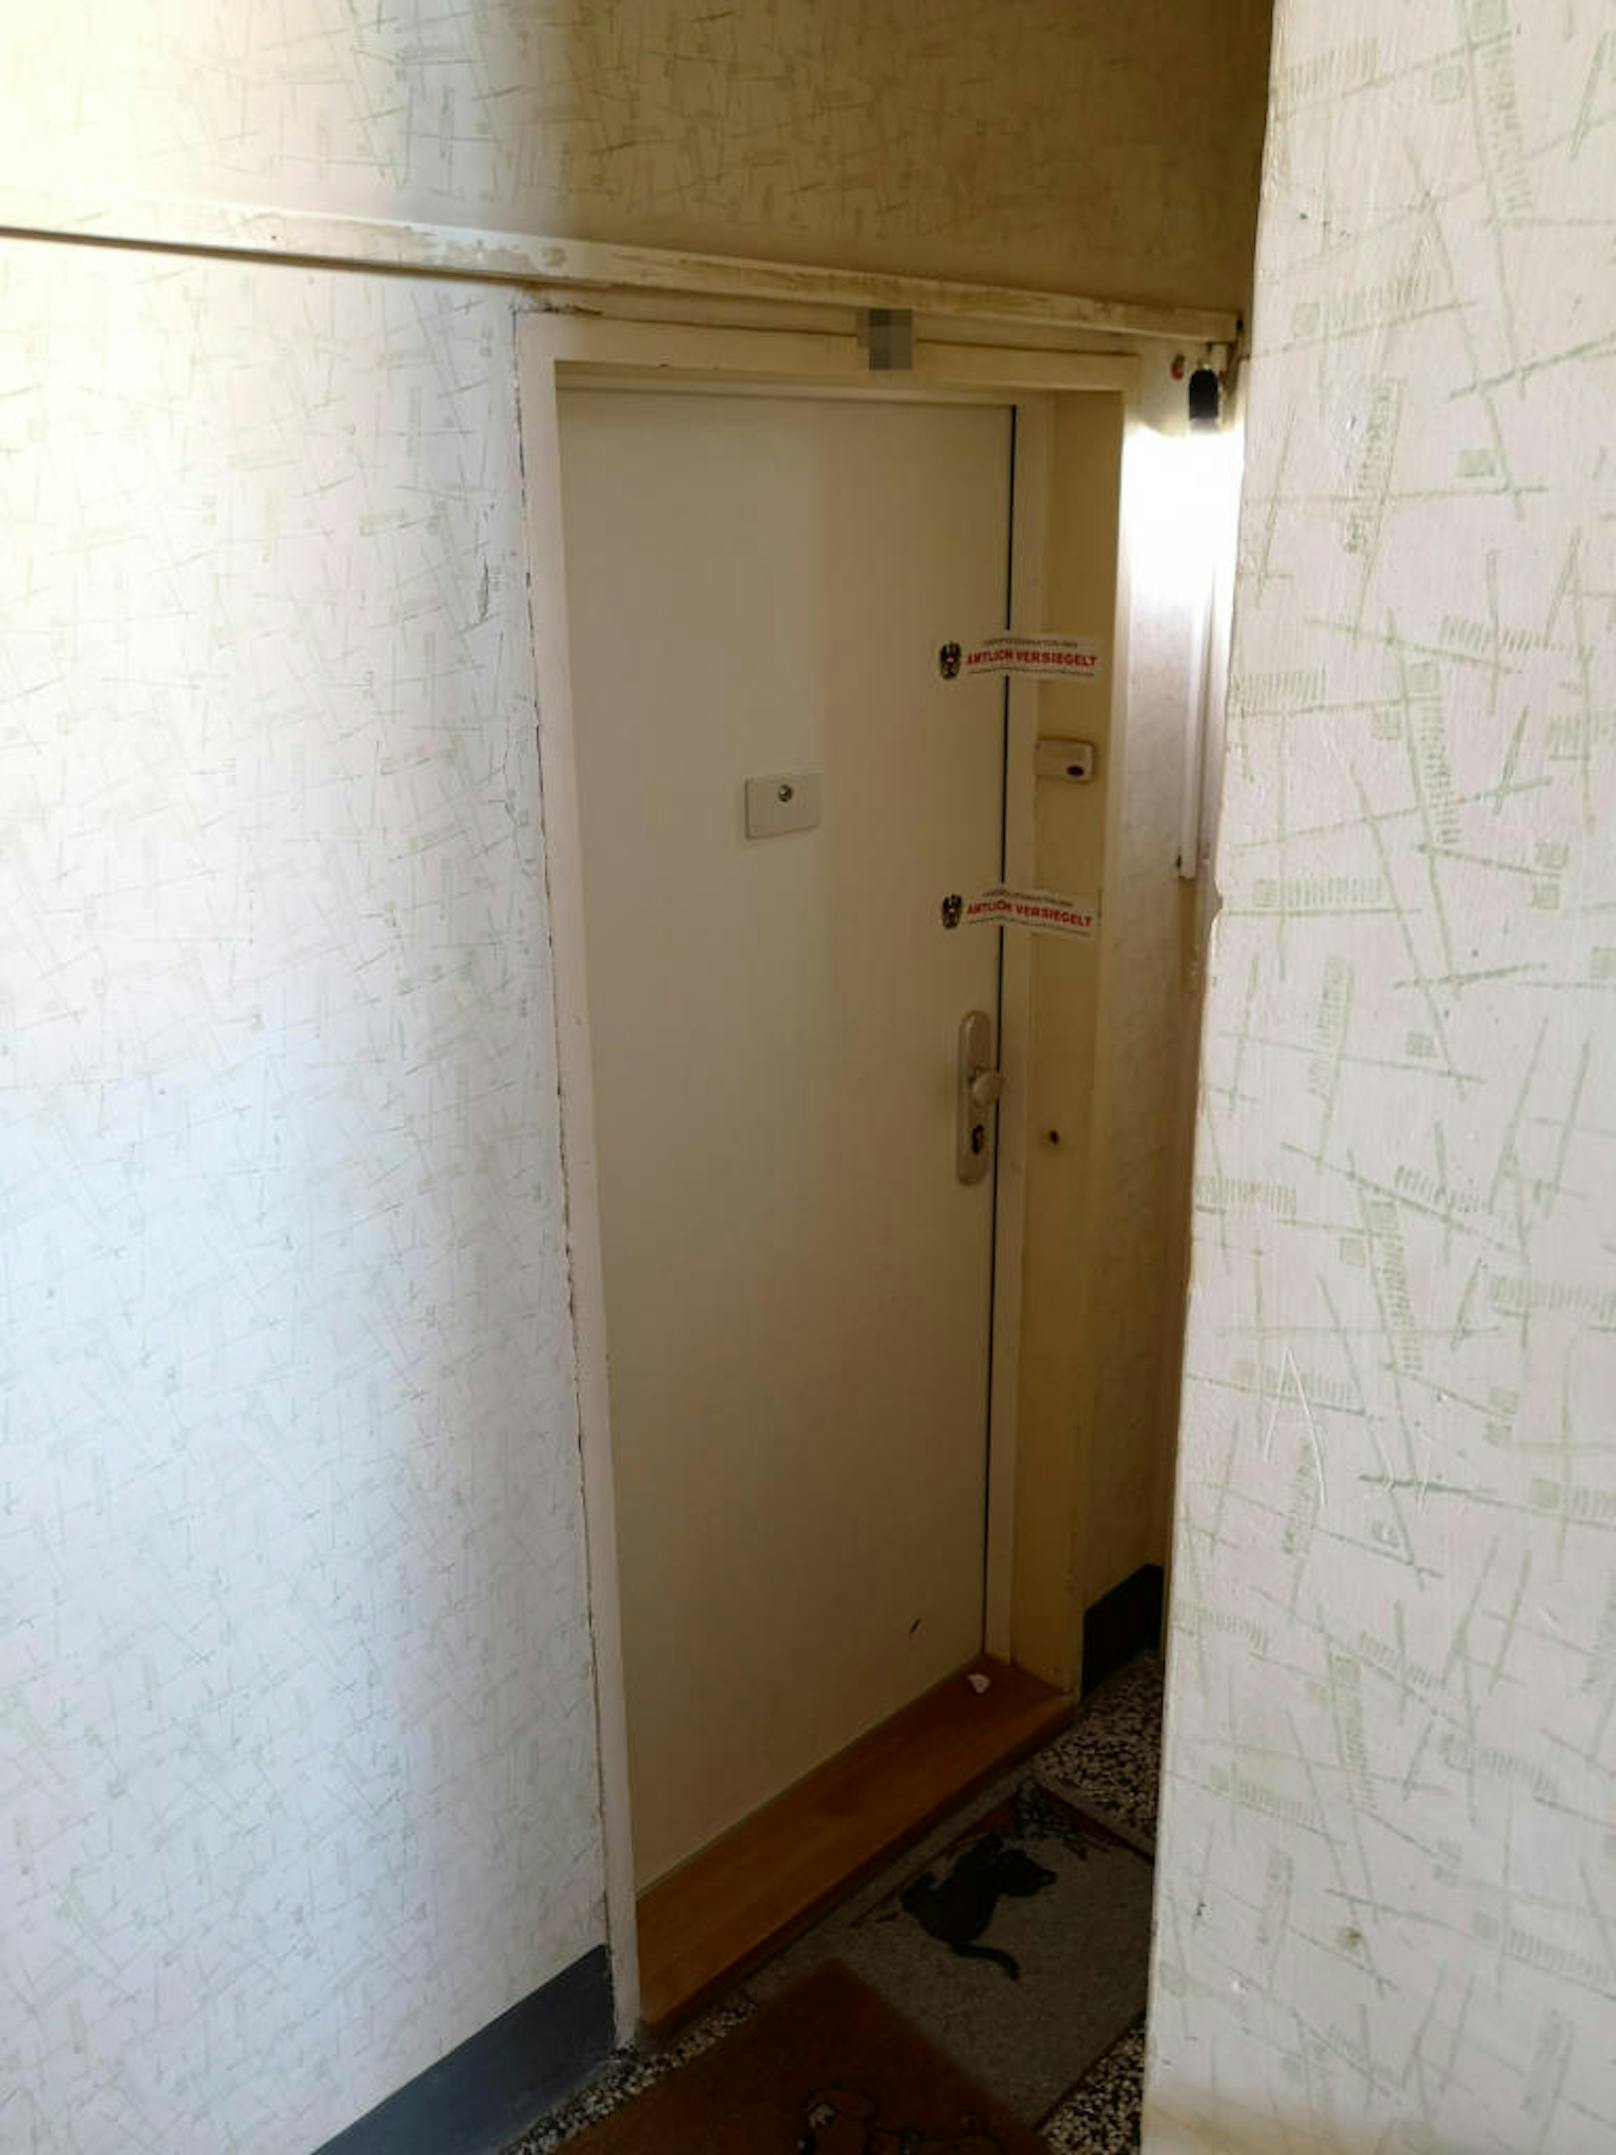 Hinter dieser Tür im dritten Stock soll der Killer sein Opfer erwürgt und anschließend mit einer Säge zerteilt haben.